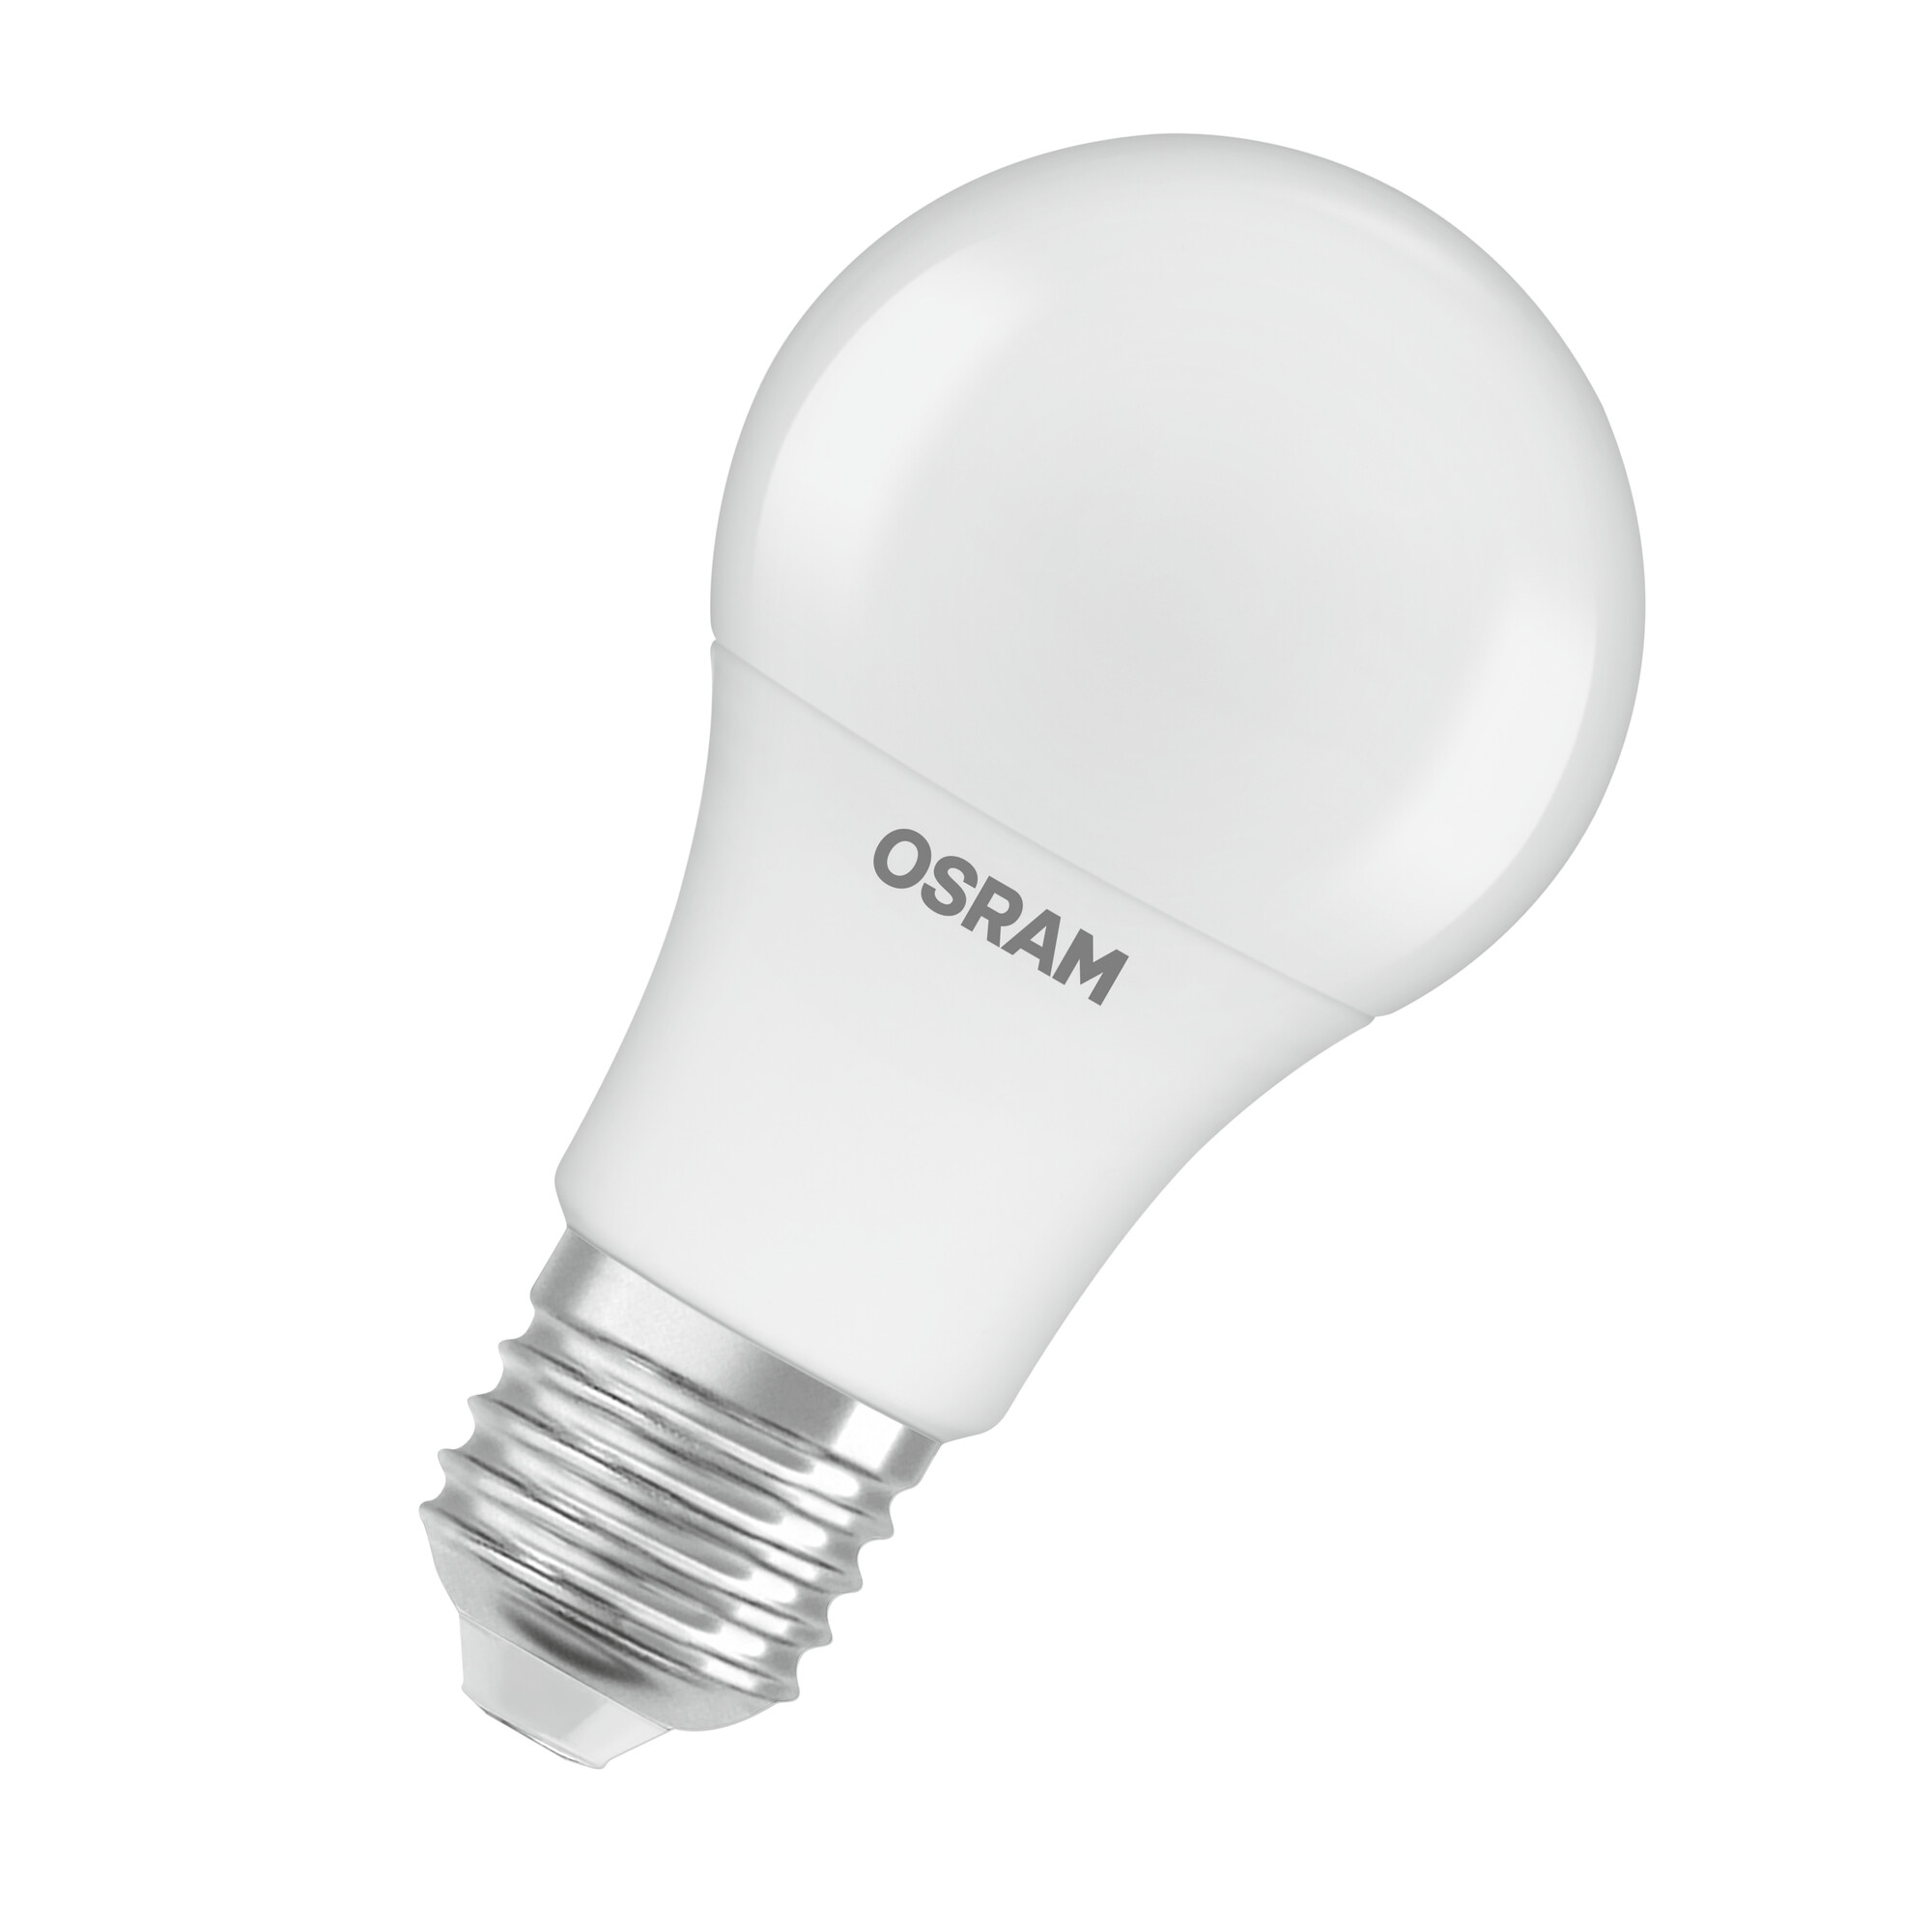 Osram LED Lampe Classic 9 Watt 12-36 Volt E27 840 4000 Kelvin neutralweiss matt